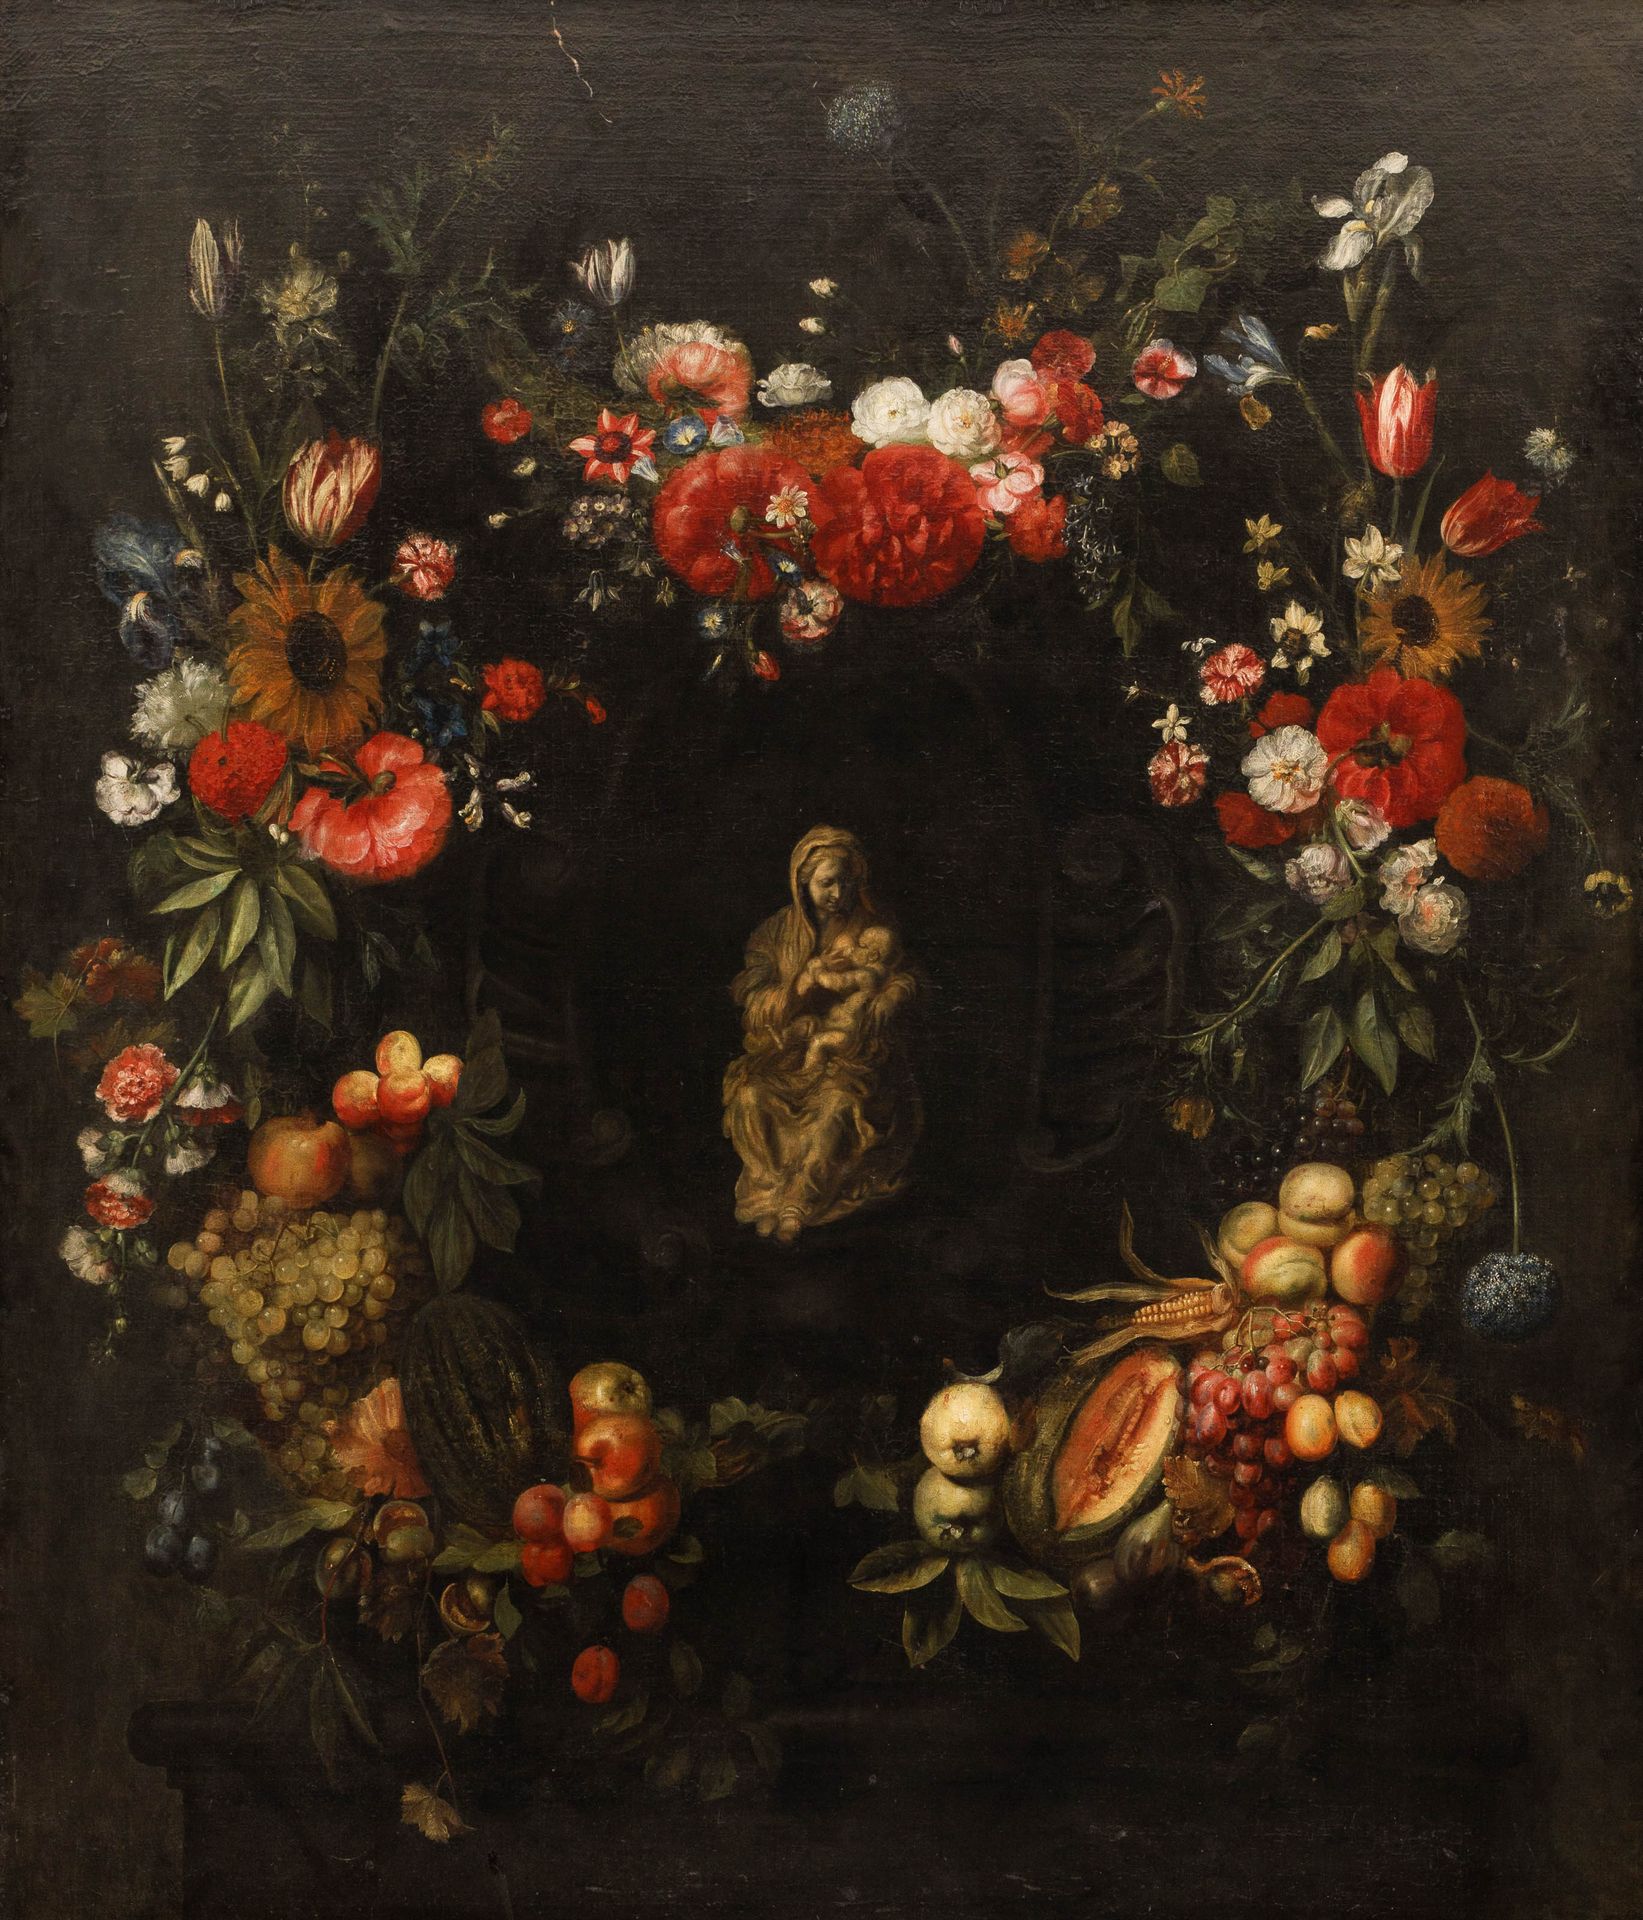 FRANS YKENS (1601-1693) (attribuibile a)

Corona di fiori e frutta attorno a una&hellip;